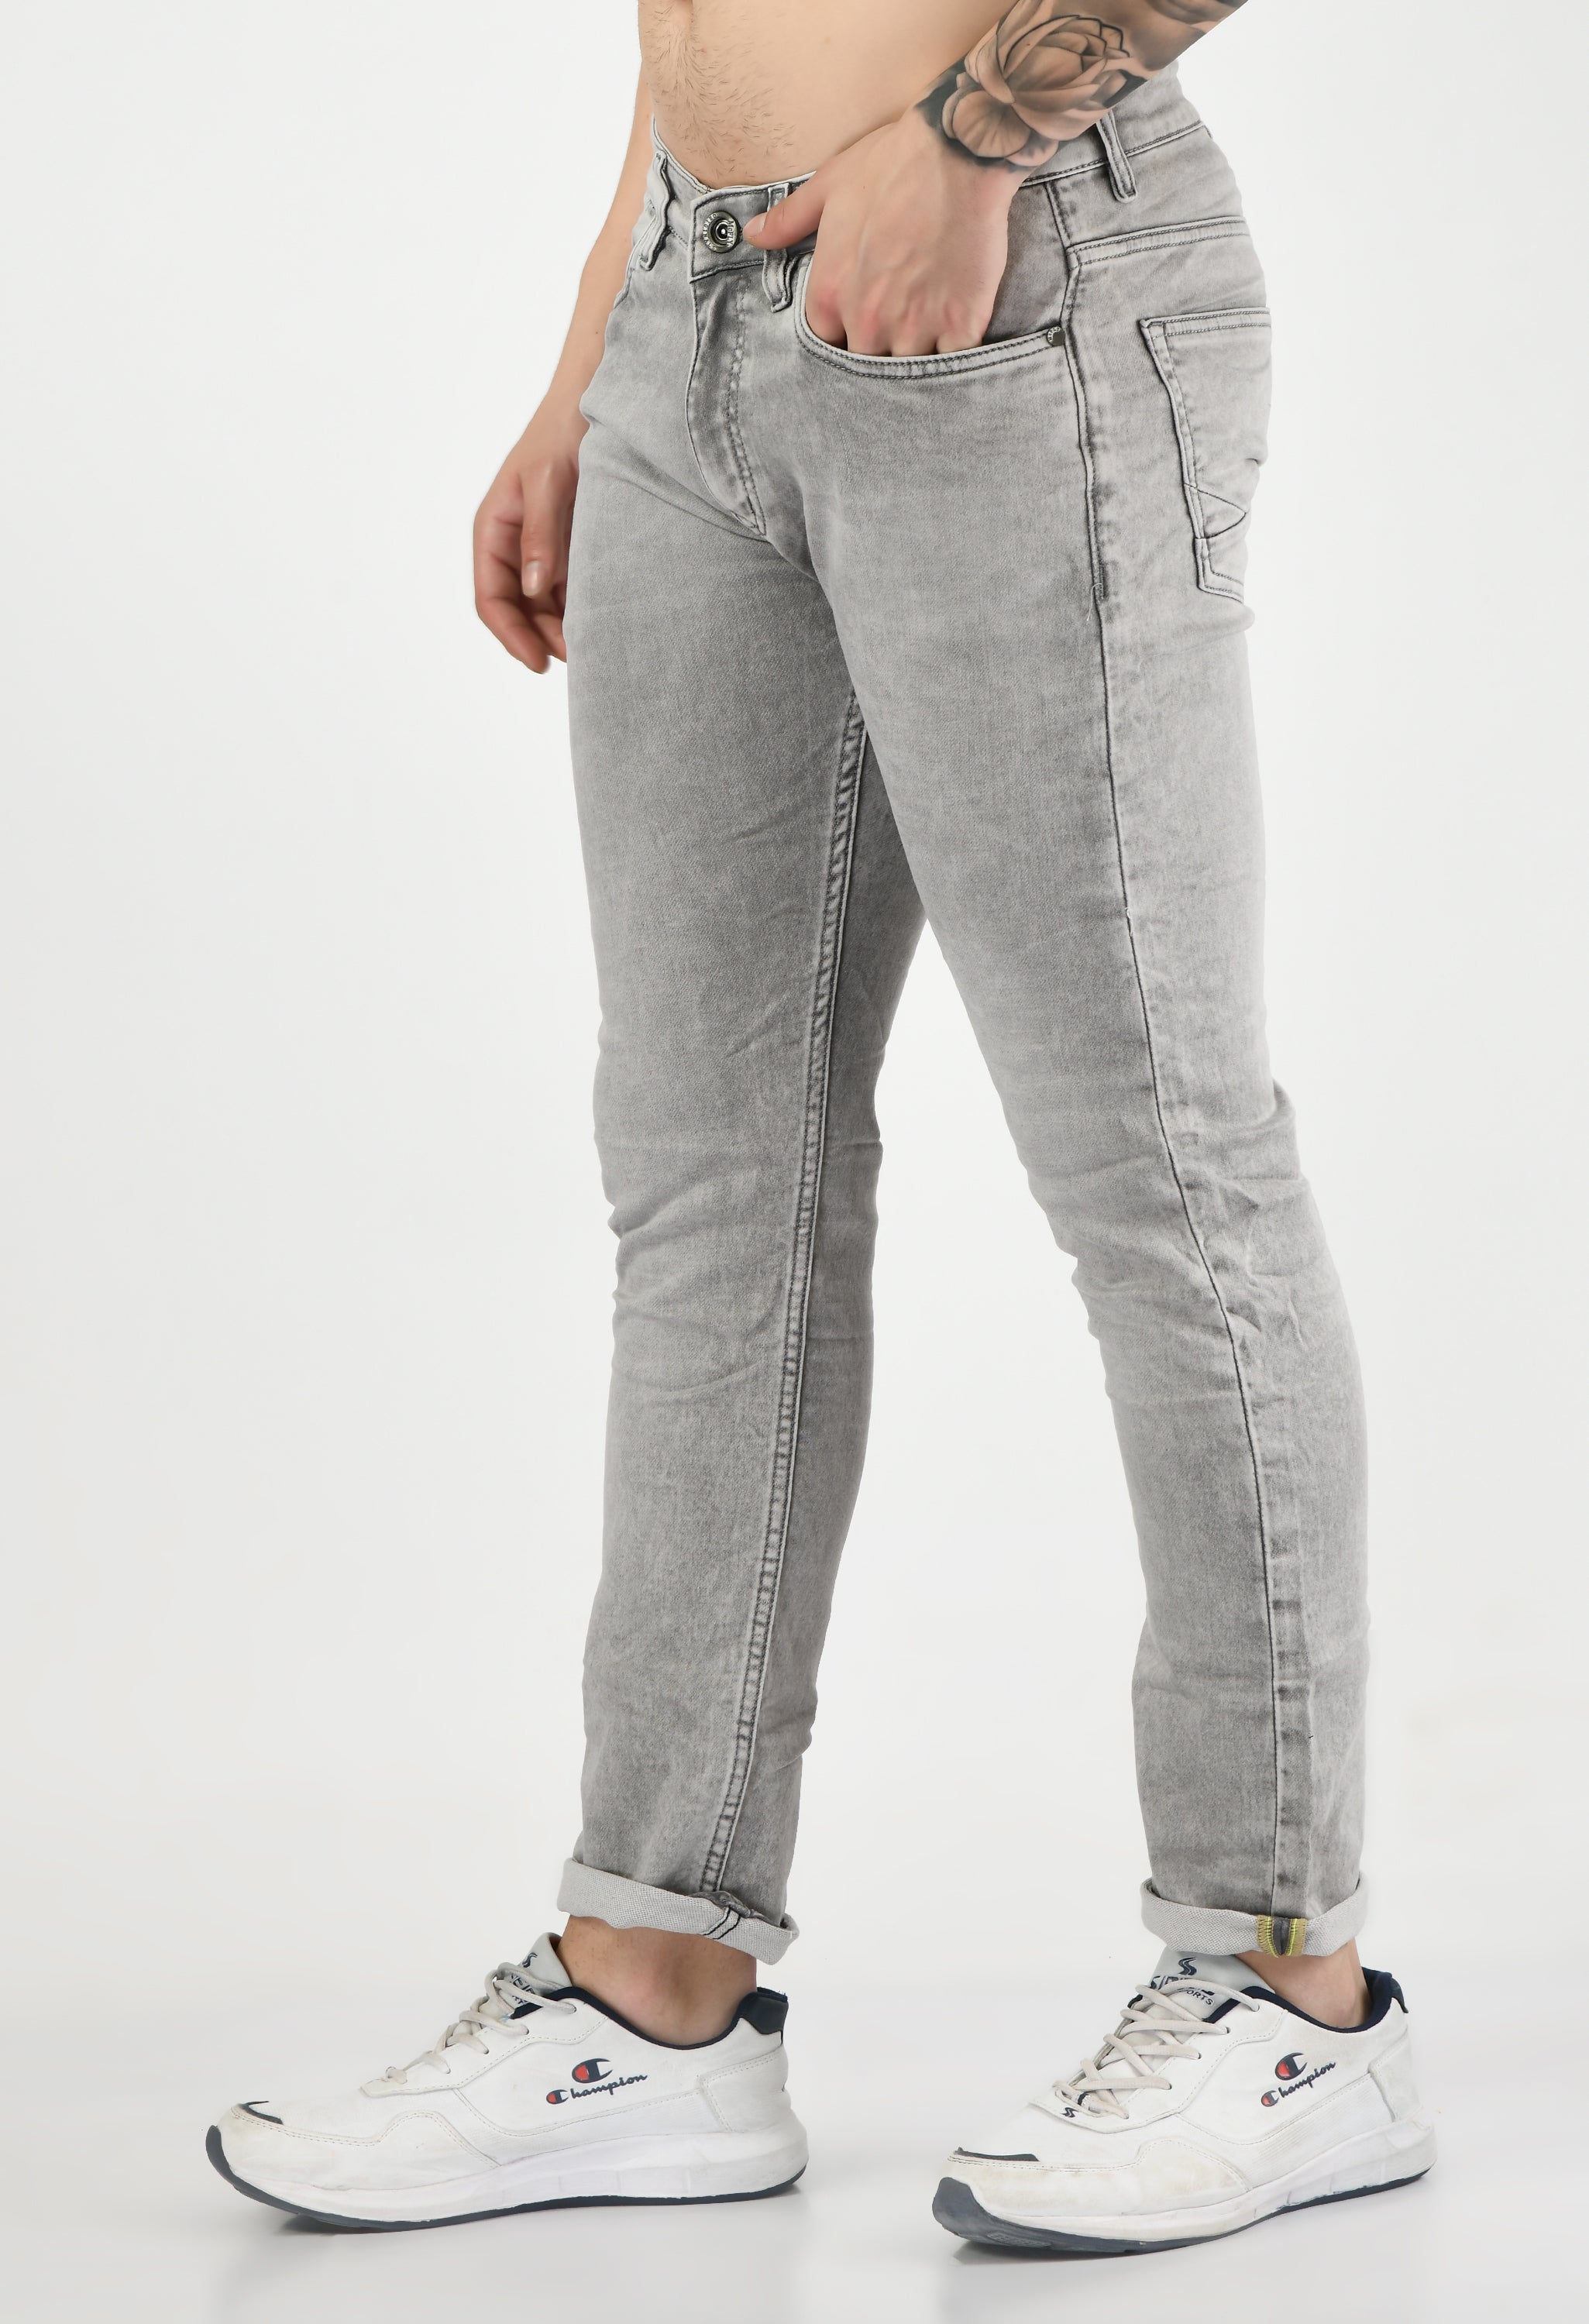 Light Grey Denim Slim Fit Jeans for Men